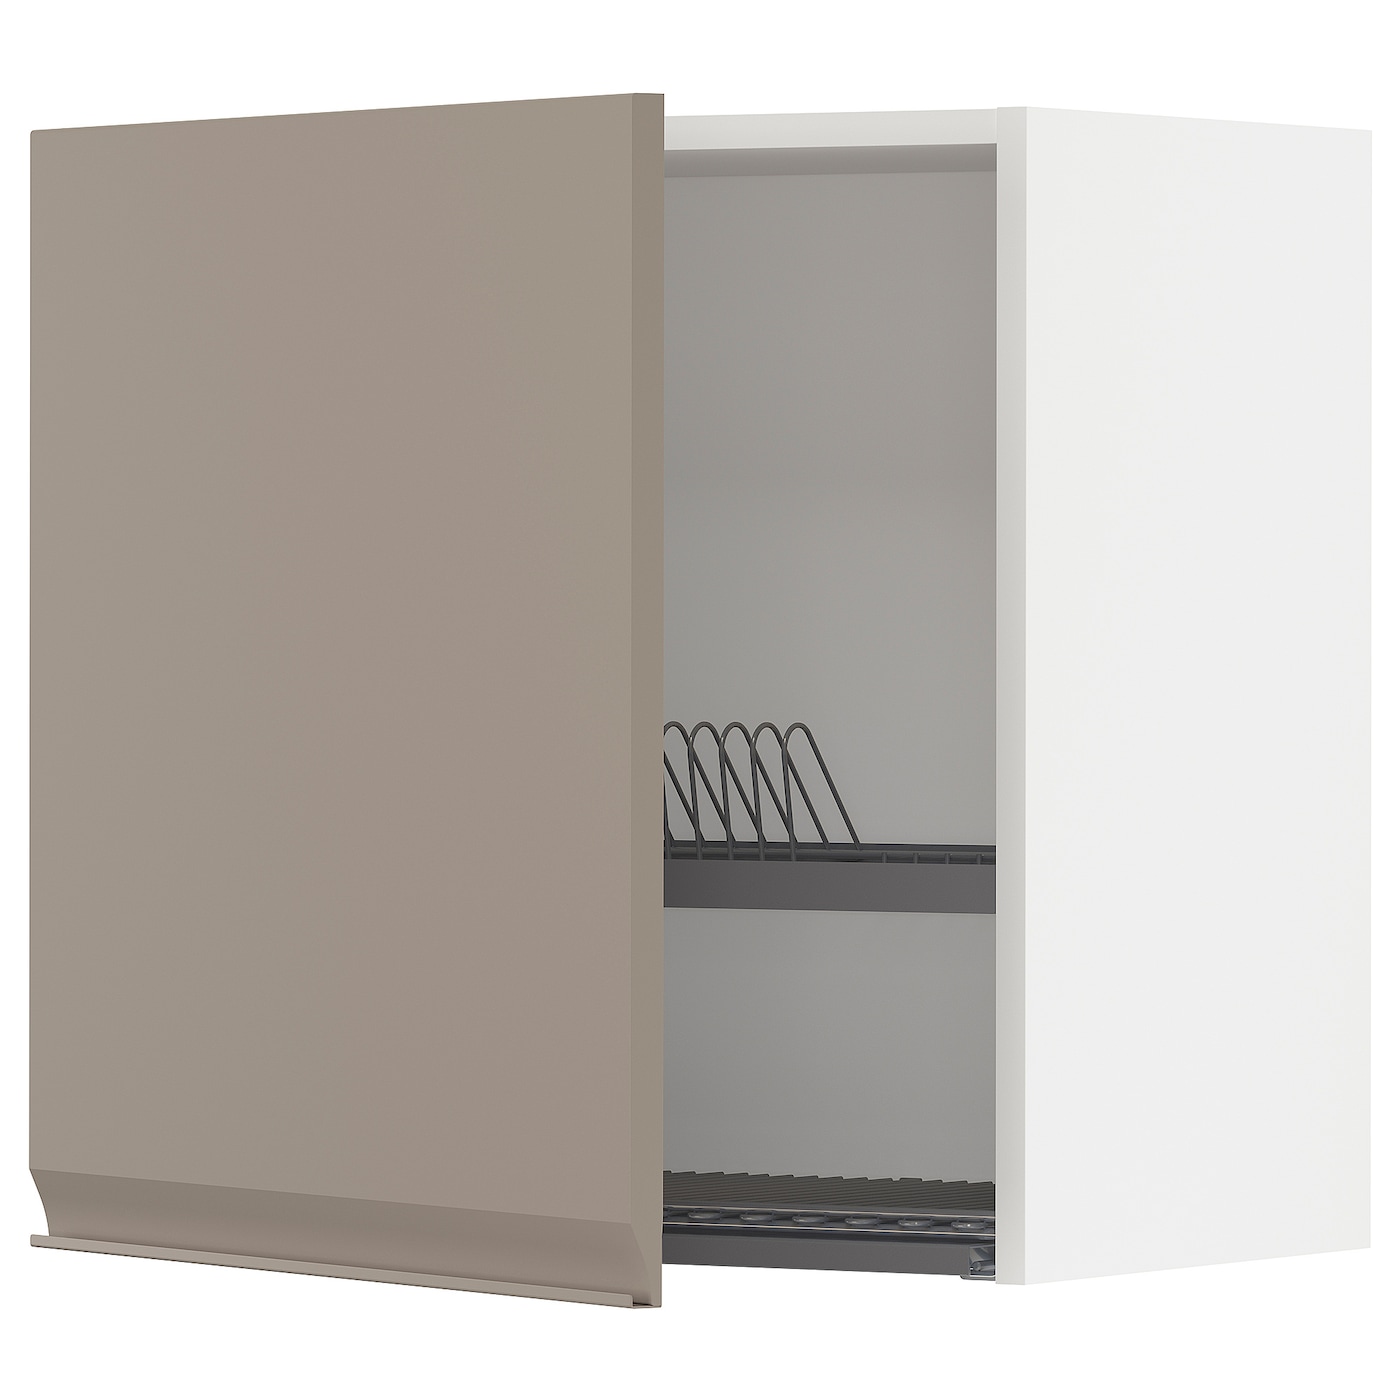 Навесной шкаф с сушилкой - METOD IKEA/ МЕТОД ИКЕА, 60х60 см, белый/светло-коричневый